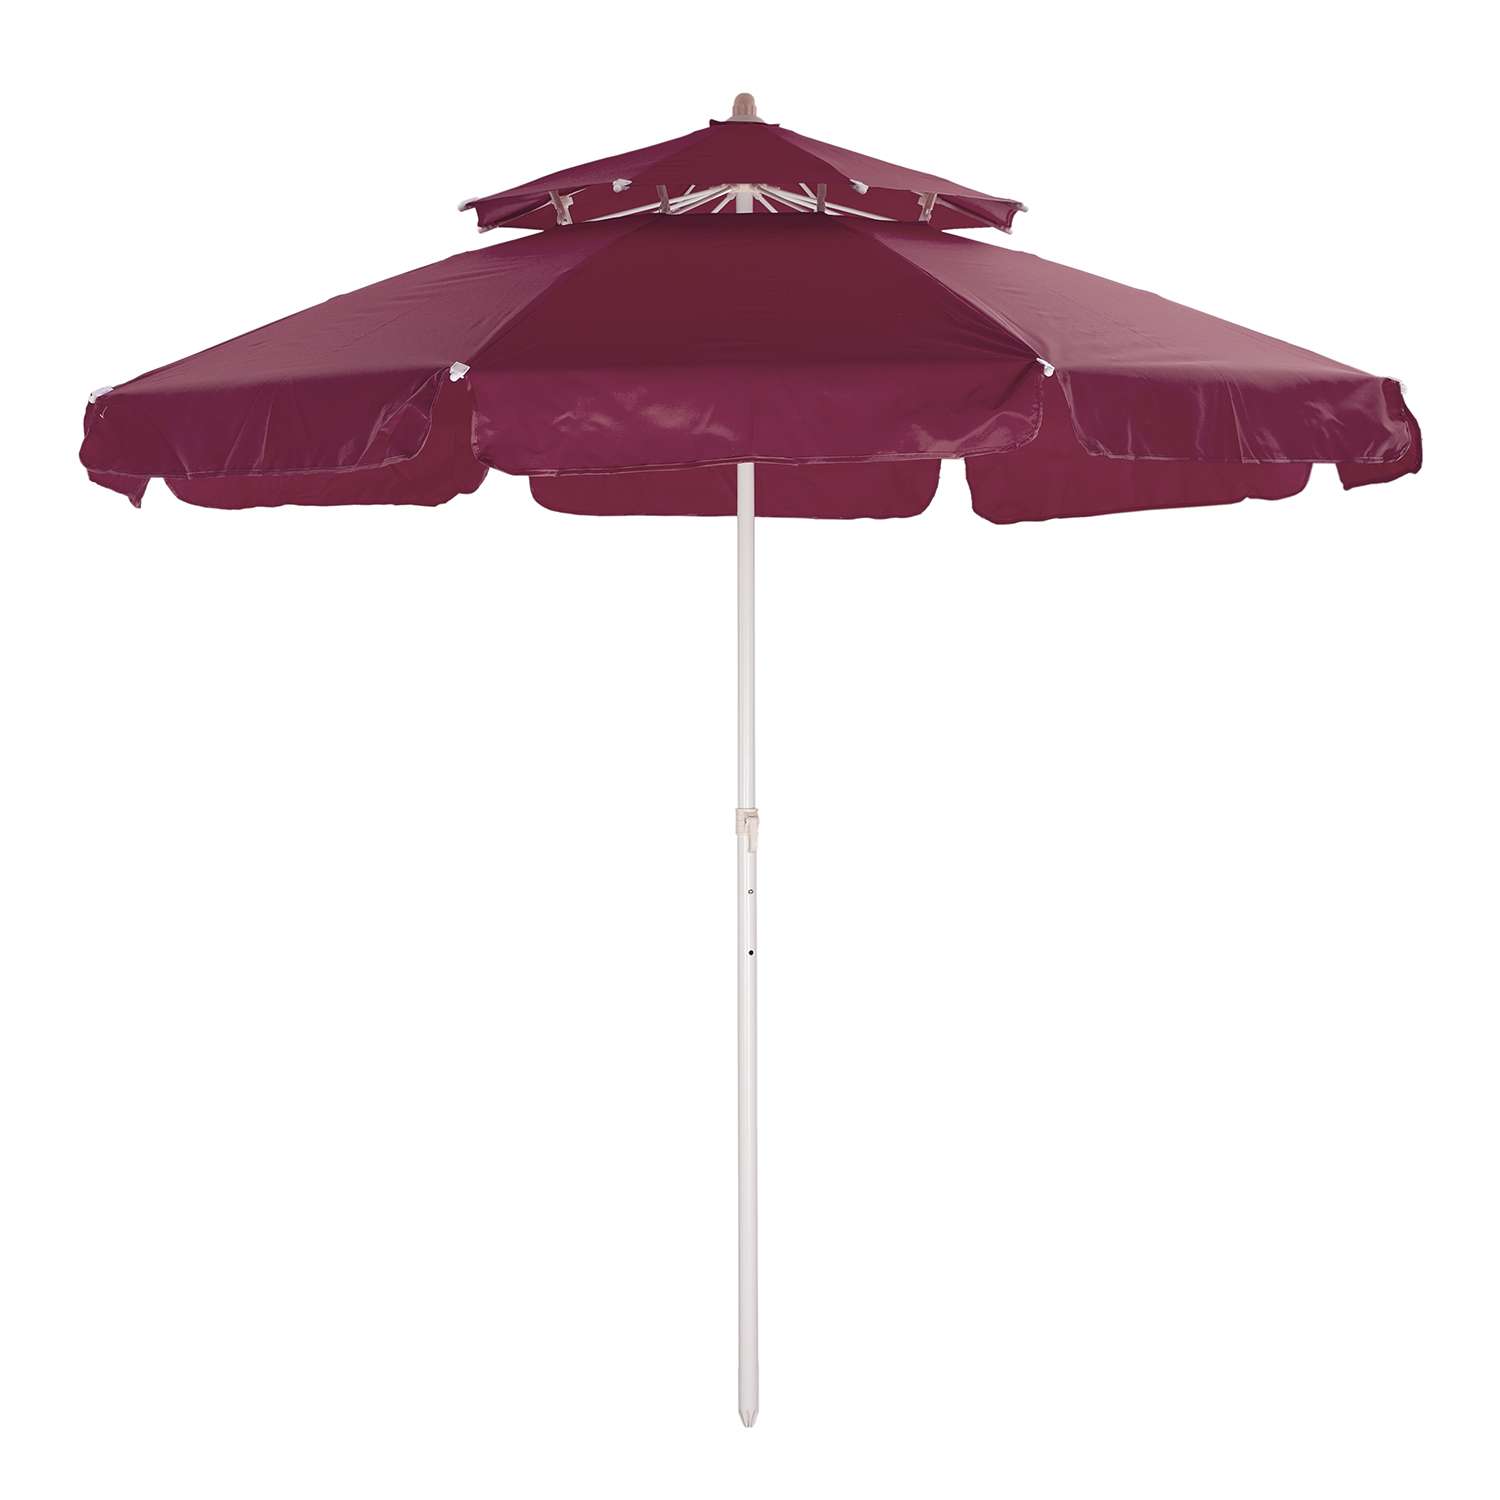 Зонт пляжный BABY STYLE большой от солнца туристический с клапаном 2.15м ткань бахрома бордовый - фото 1